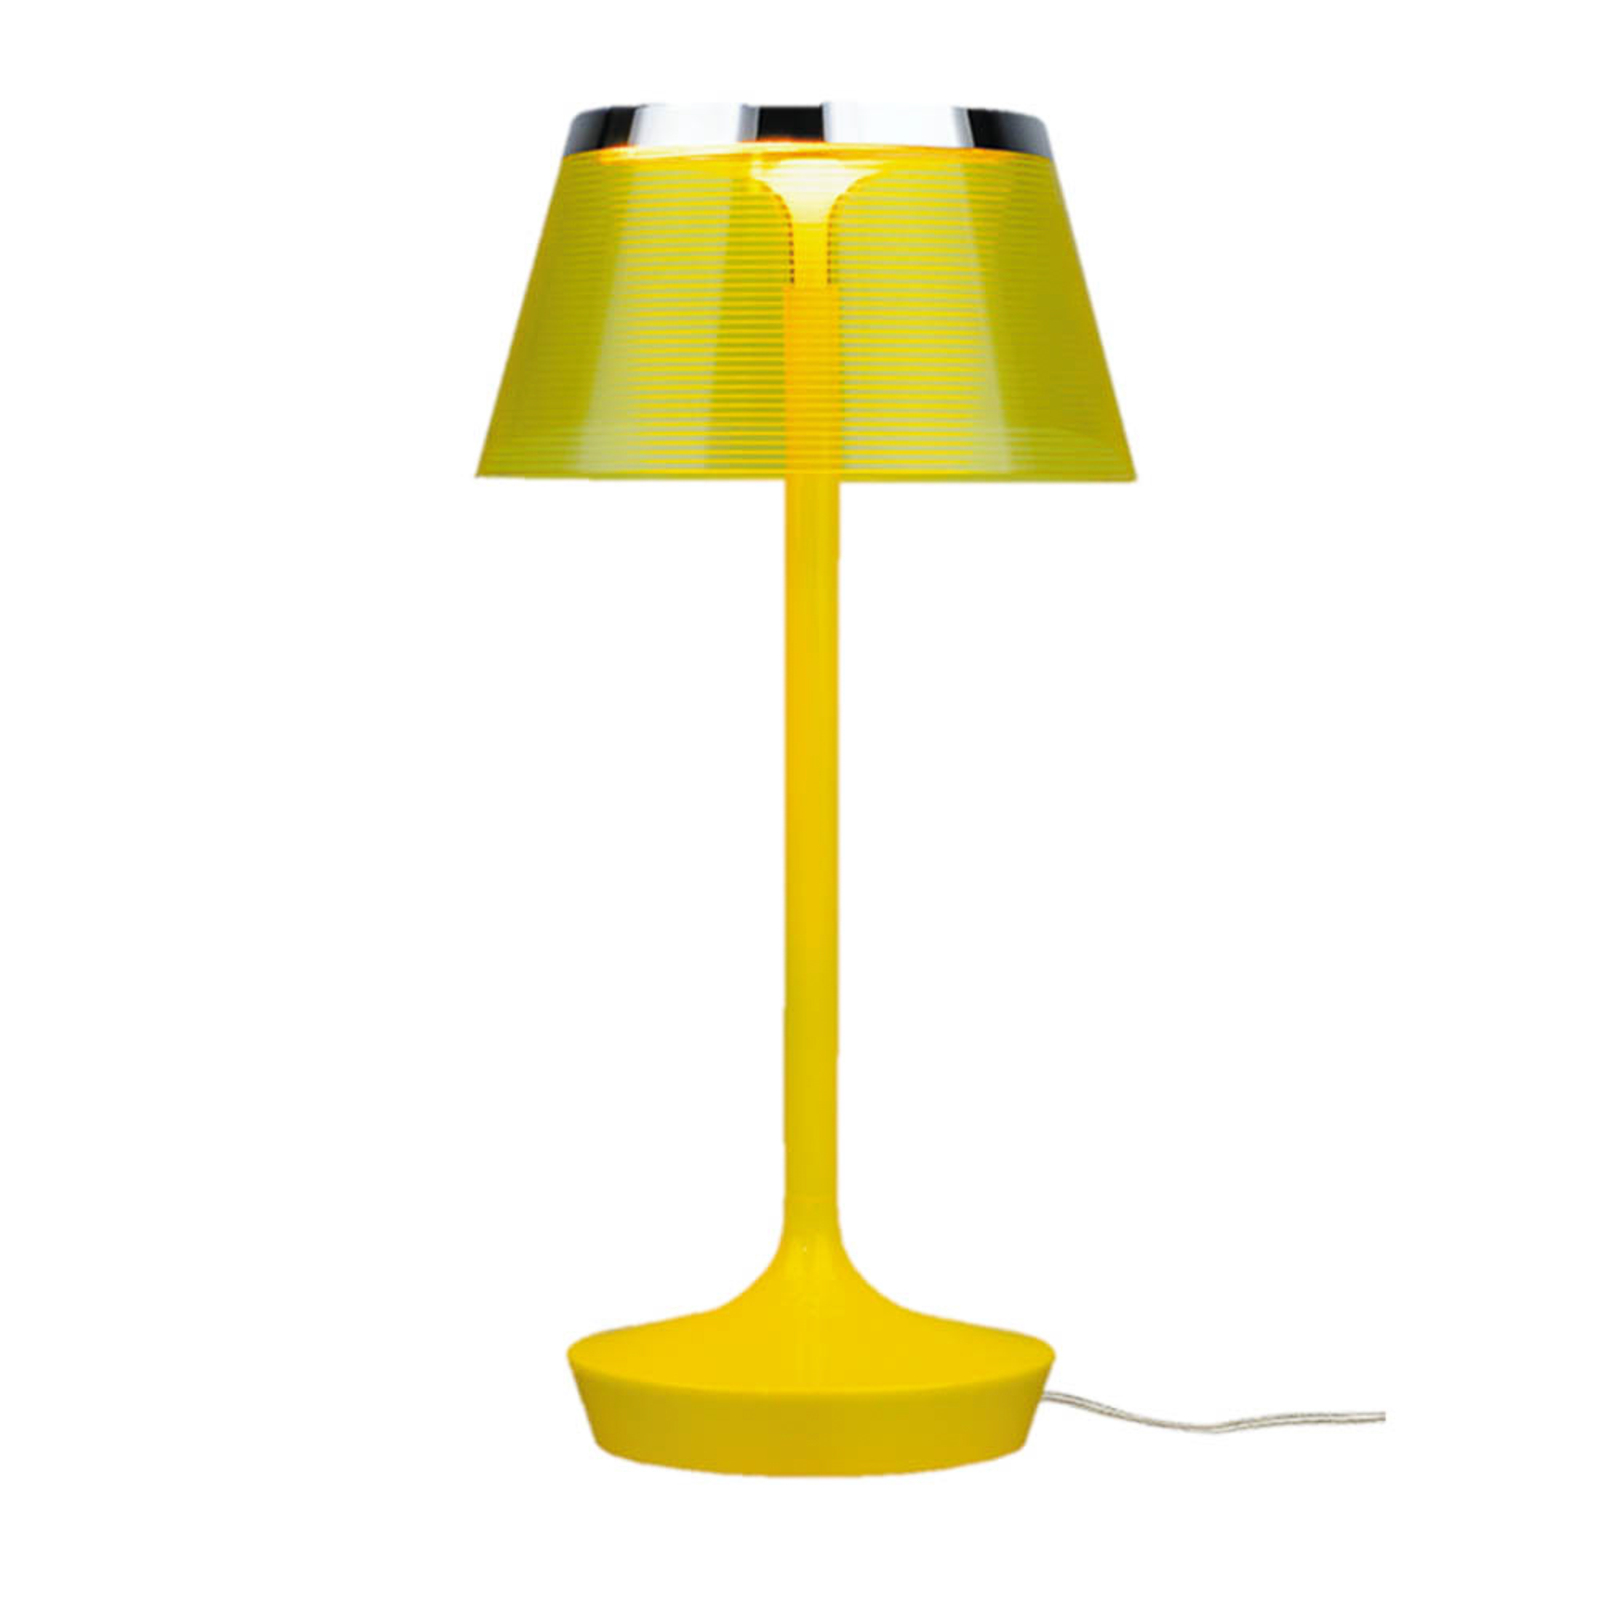 Aluminor La Petite Lampe LED настолна лампа, жълта